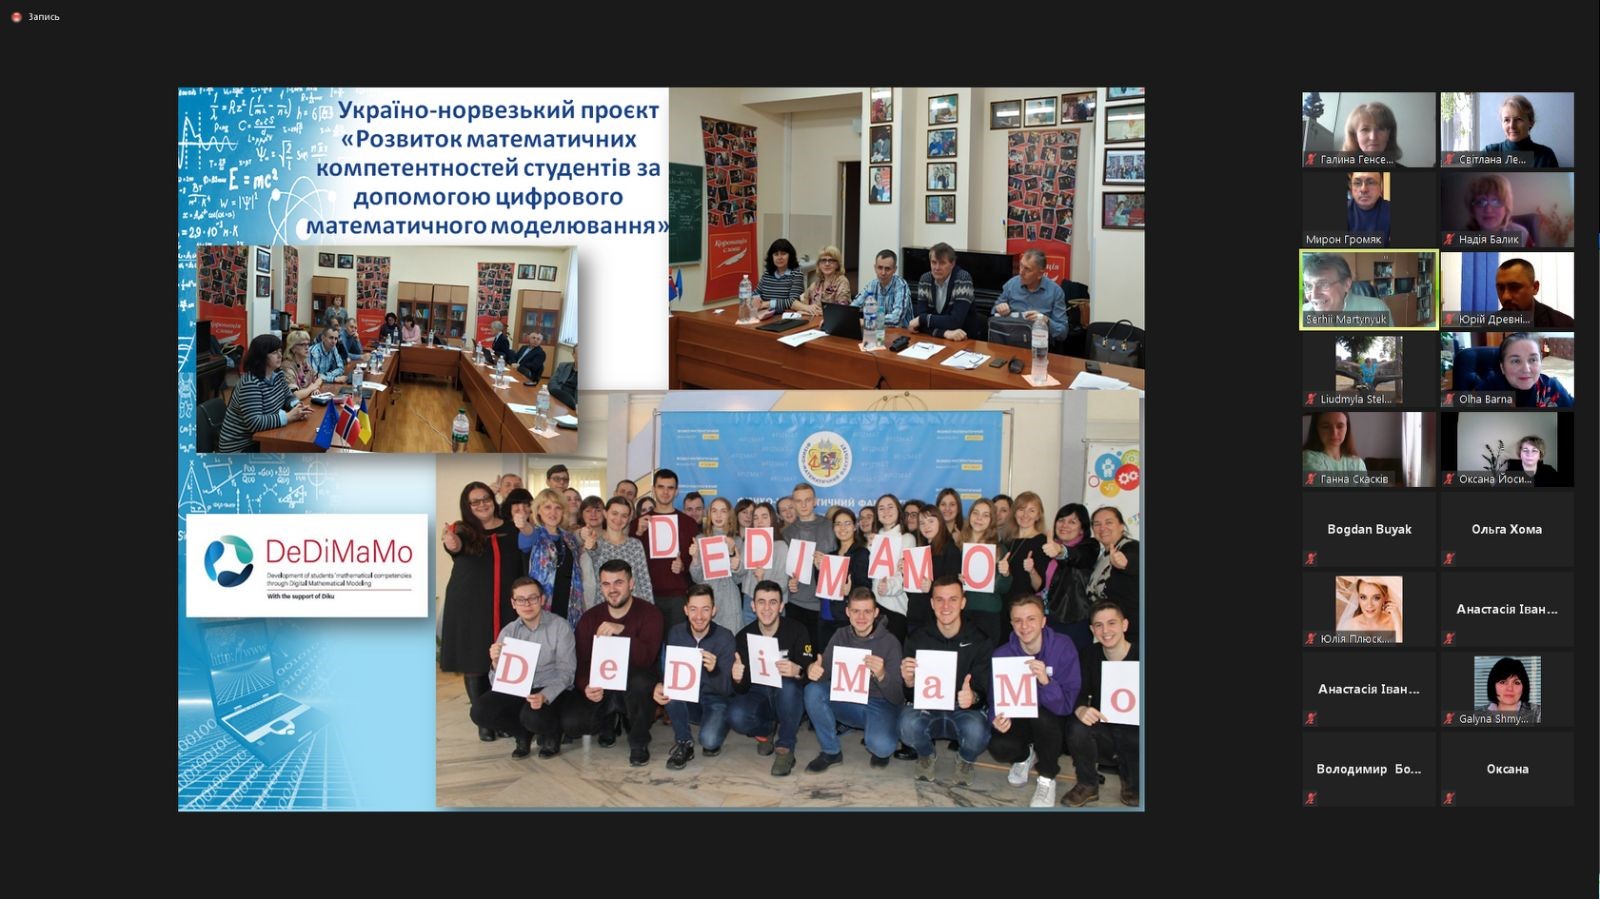 (Українська) Популяризація міжнародного проєкту DeDiMaMo  у рамках «Математичної майстерні ТНПУ»